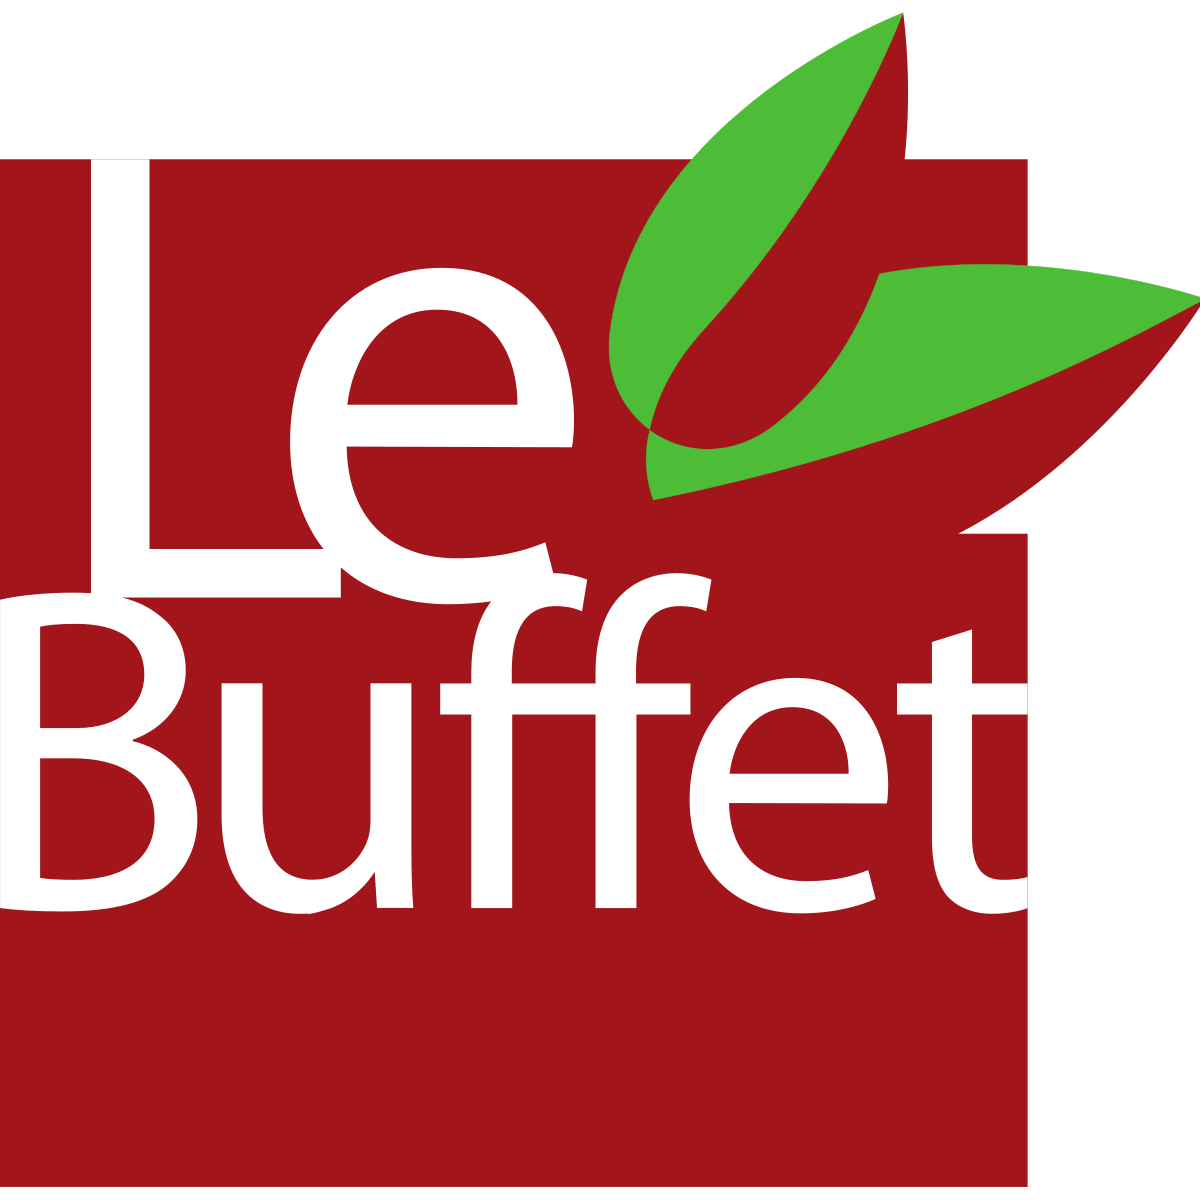 Logo Le Buffet